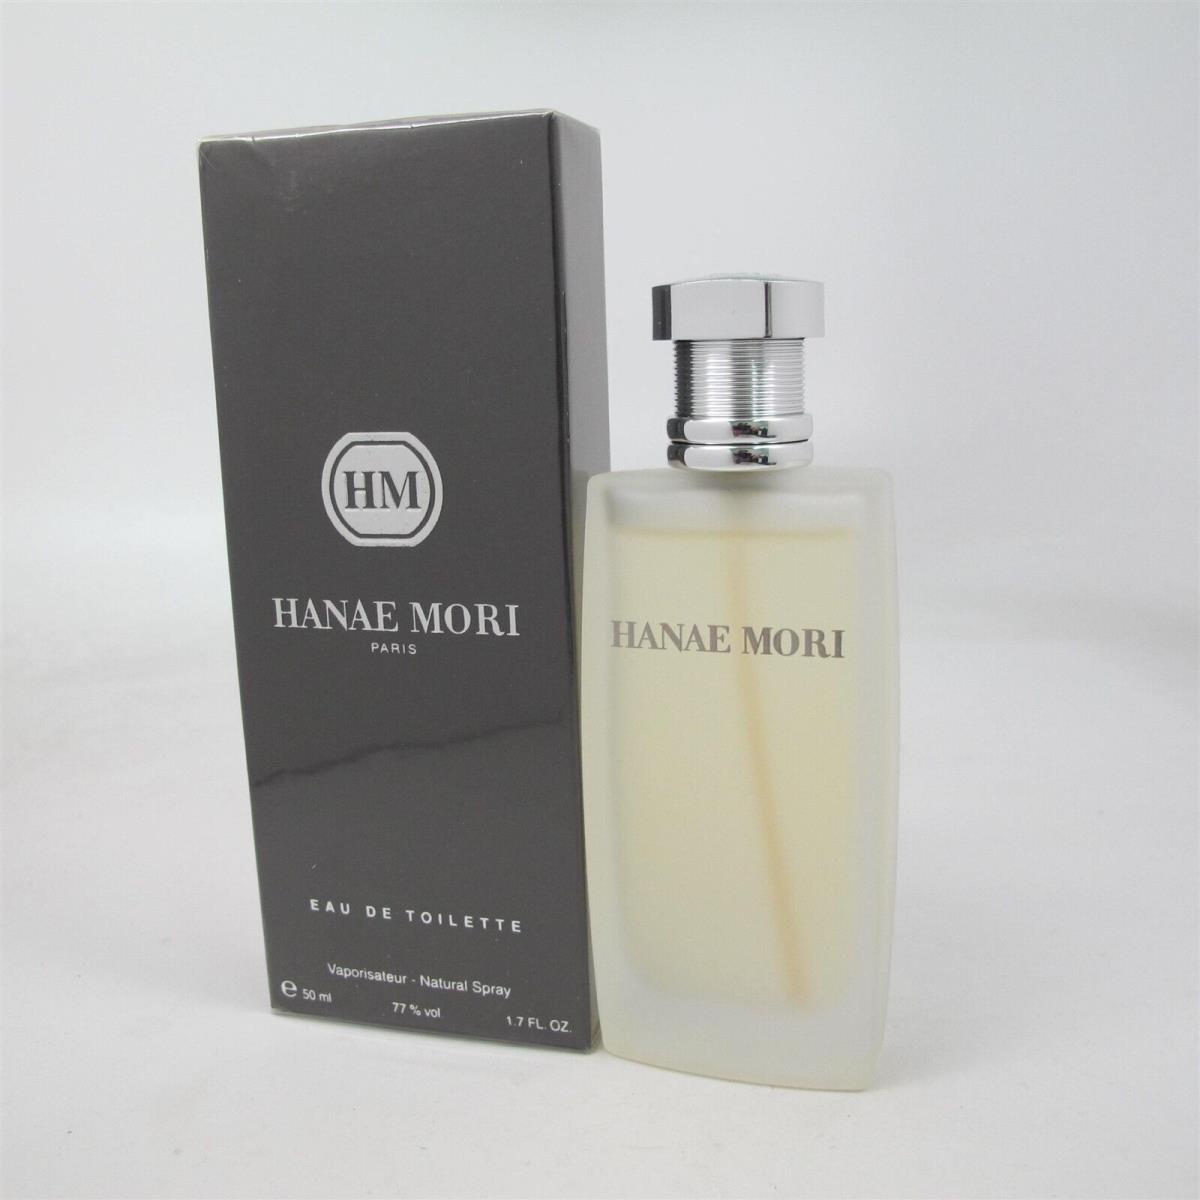 HM by Hanae Mori 50 Ml/ 1.7 oz Eau de Toilette Spray